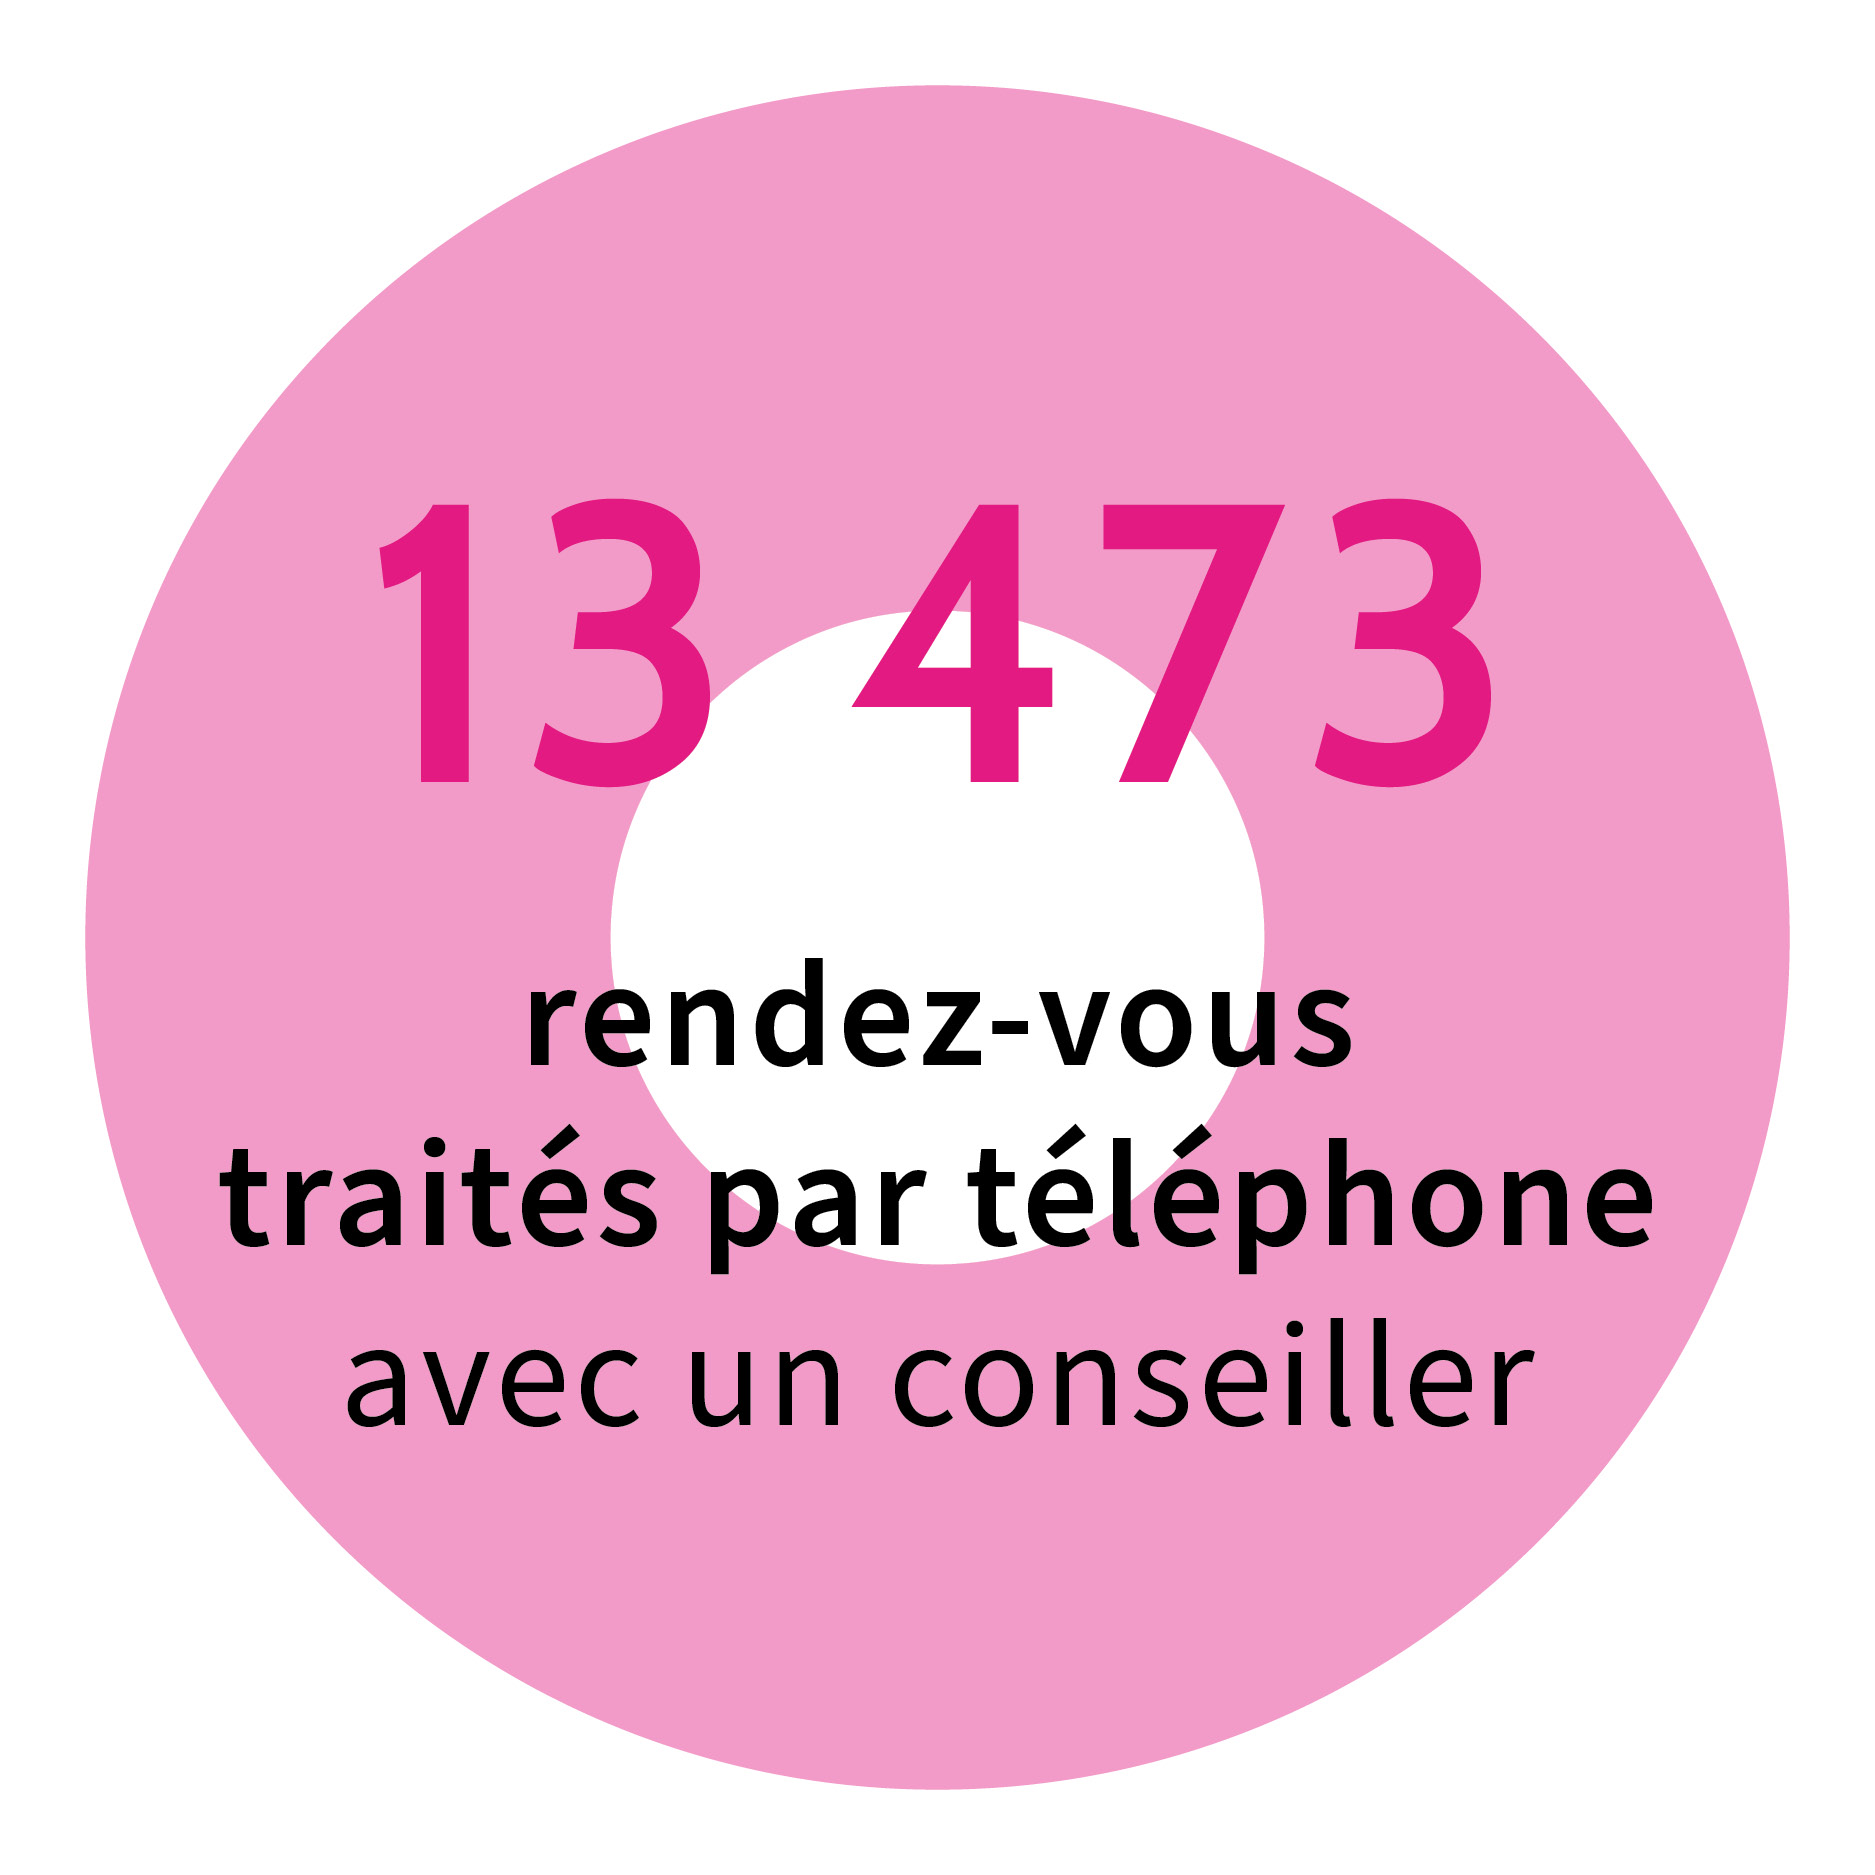 13 473 rendez-vous traités par téléphone